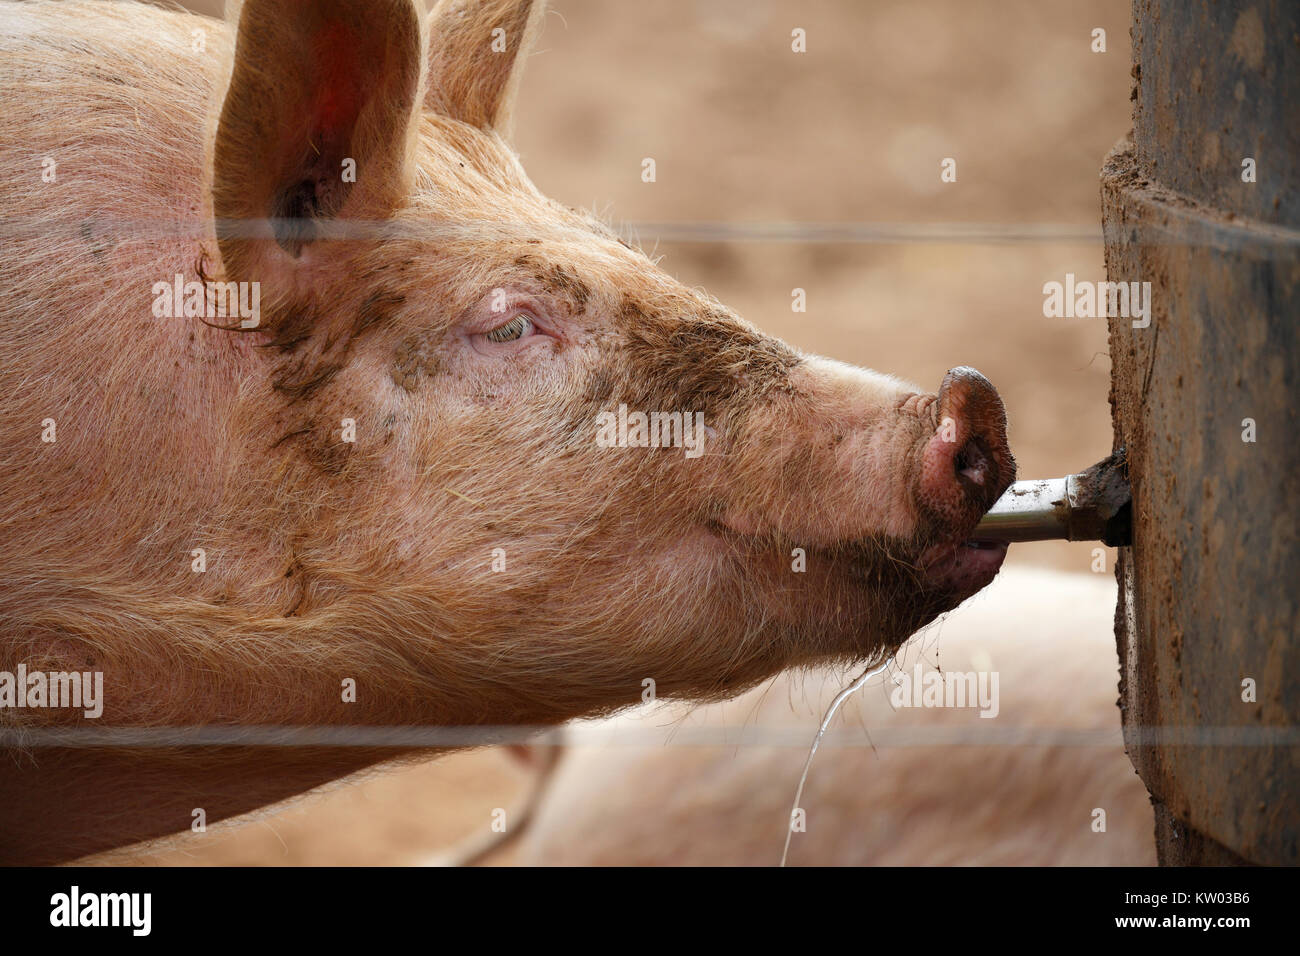 Profil von einem Schwein Trinkwasser. Stockfoto